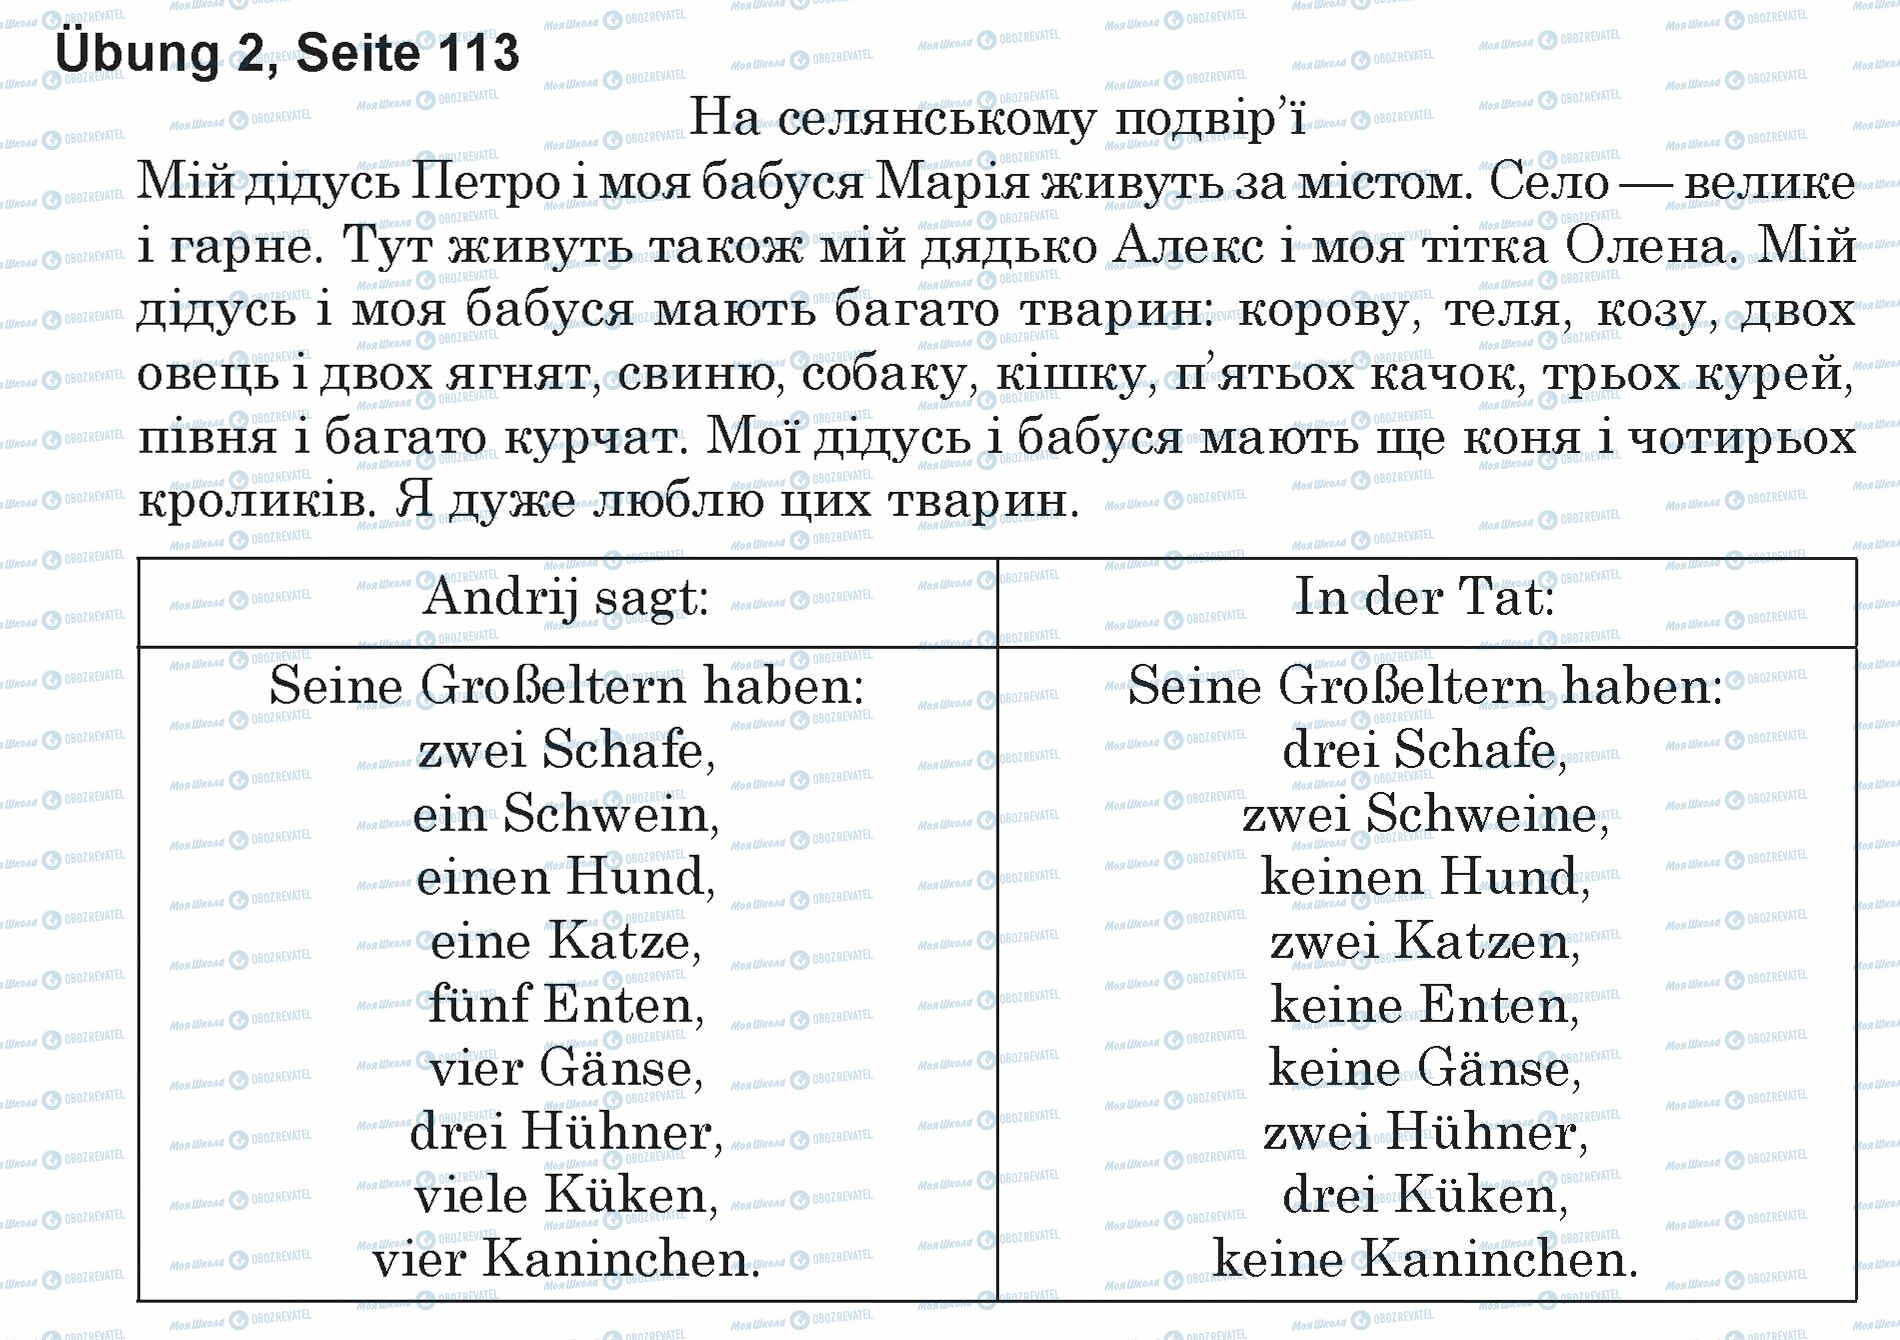 ГДЗ Немецкий язык 5 класс страница Ubung 2, Seite 113